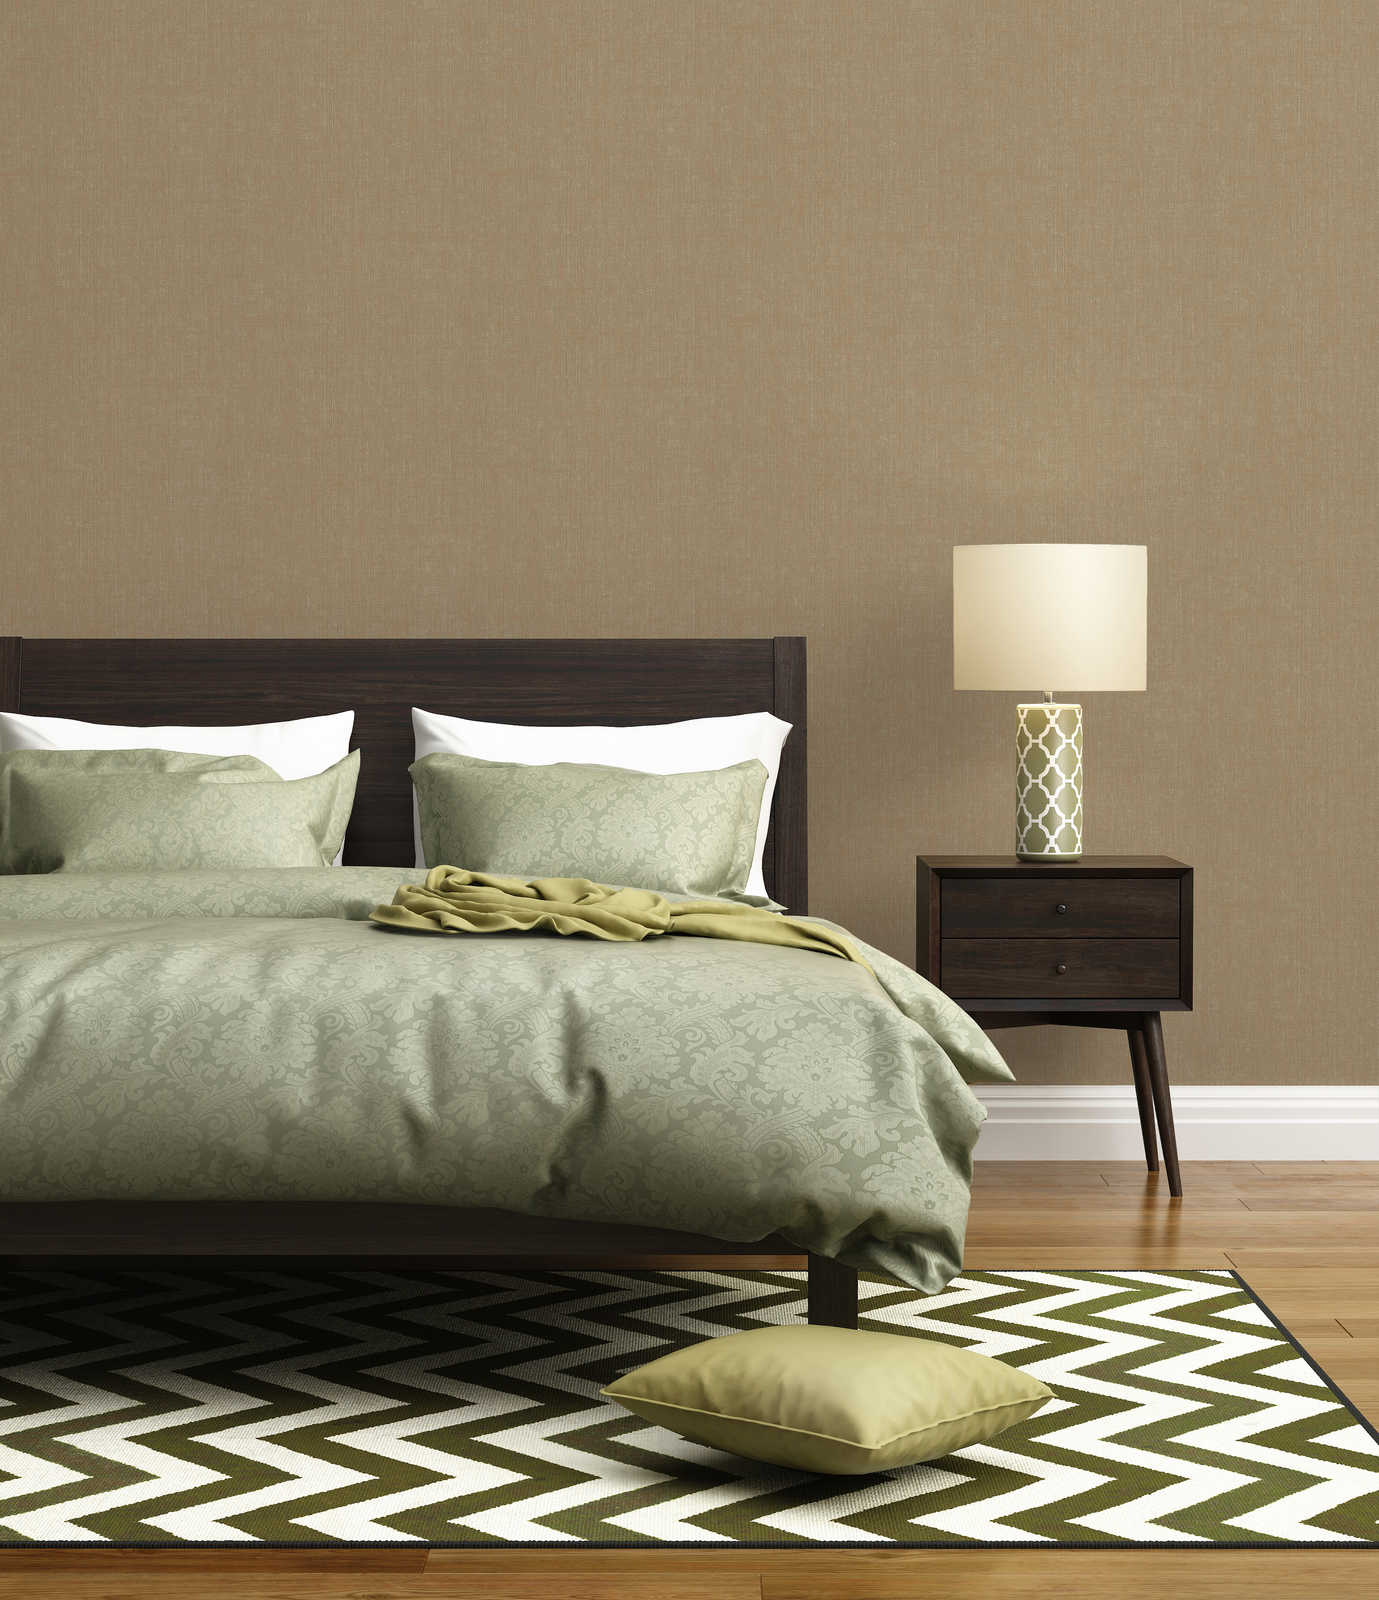             Brown wallpaper, coarse linen look
        